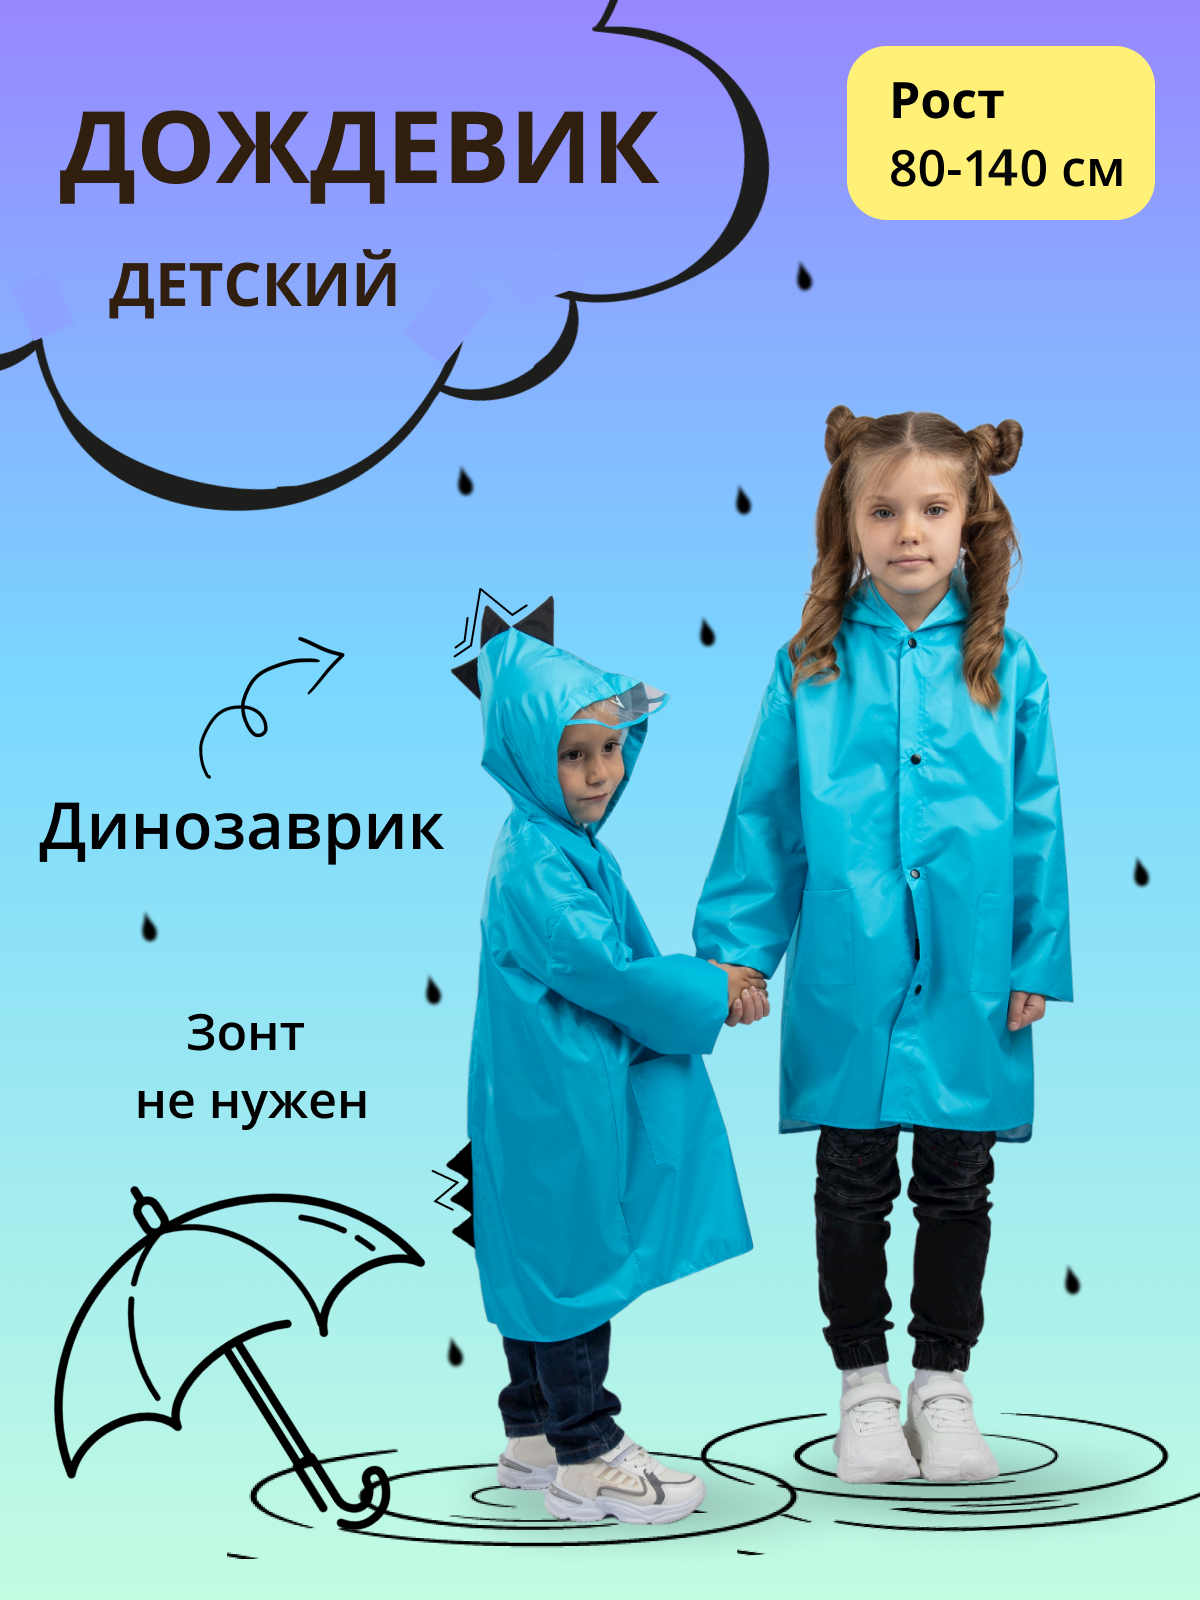 Дождевик детский Под дождем 122905588, голубой, 86